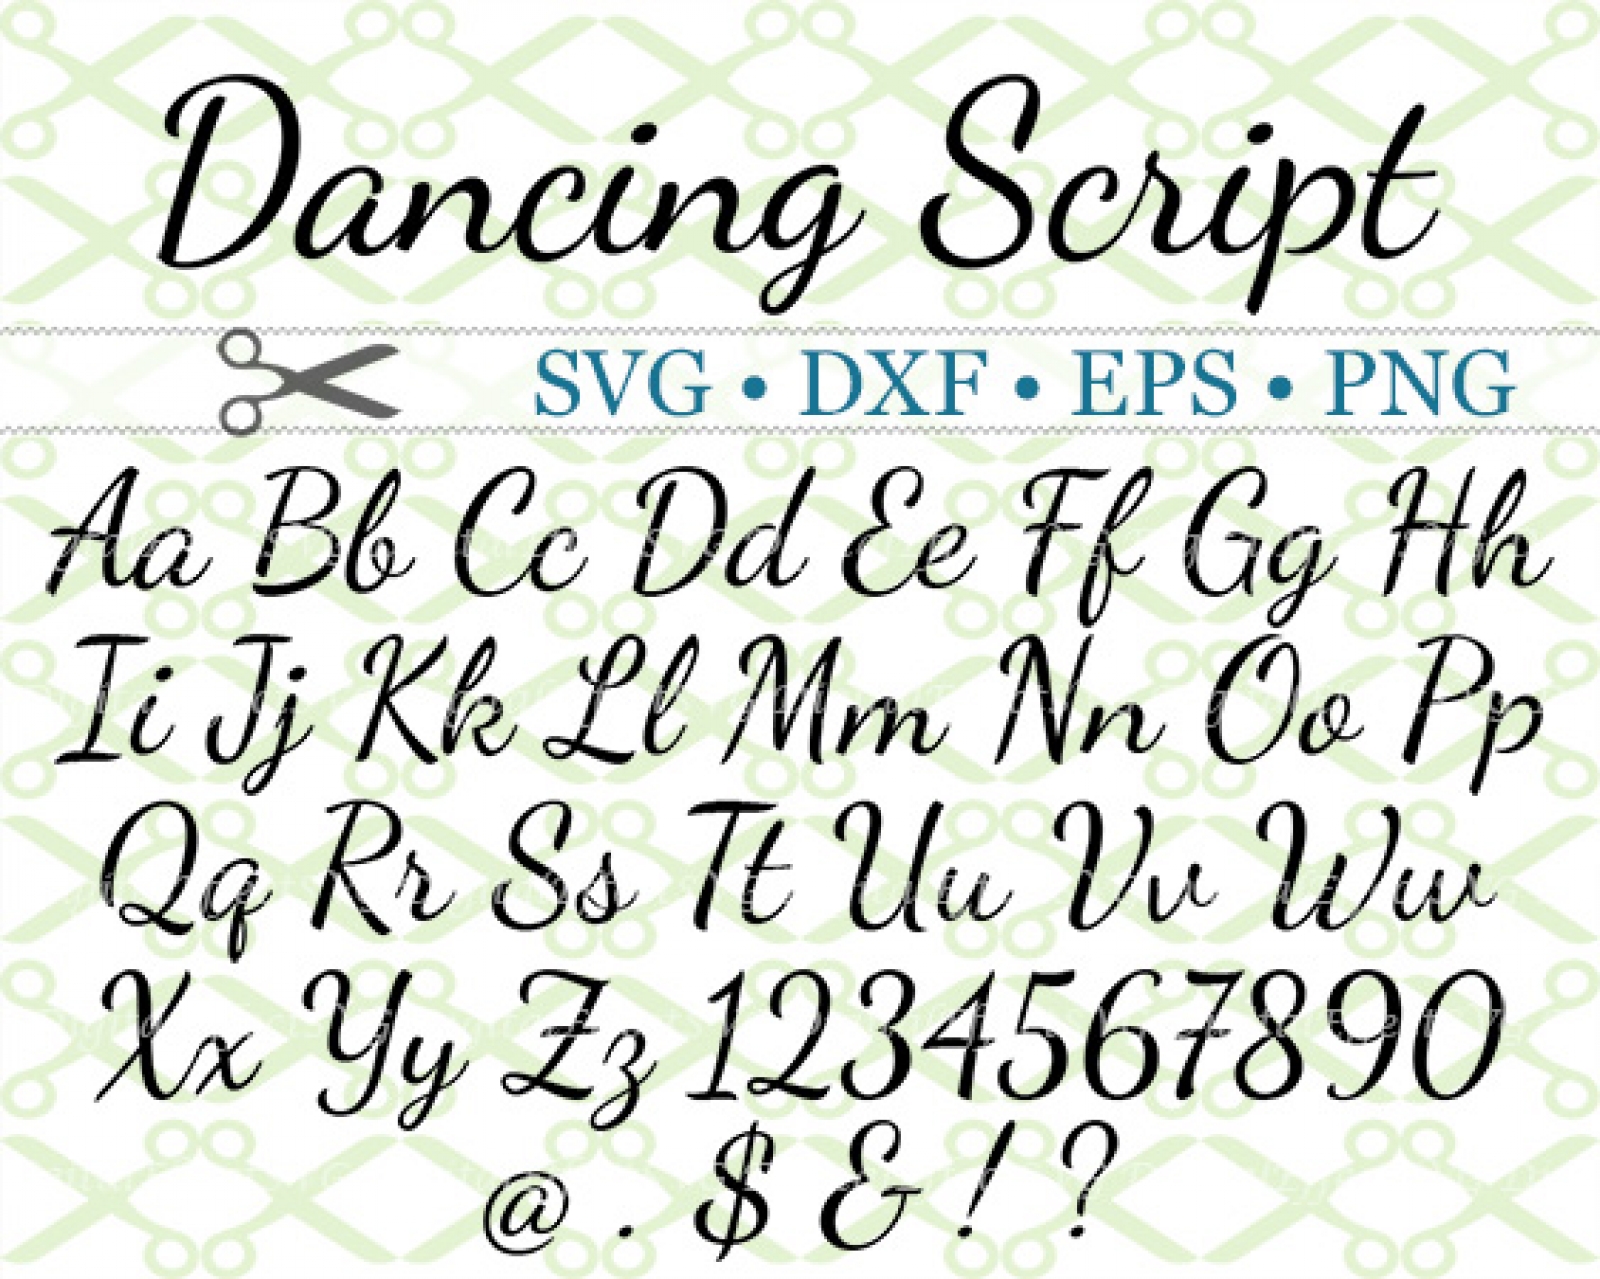 DANCING SCRIPT SVG FONT-Cricut & Silhouette Files SVG DXF EPS PNG ...